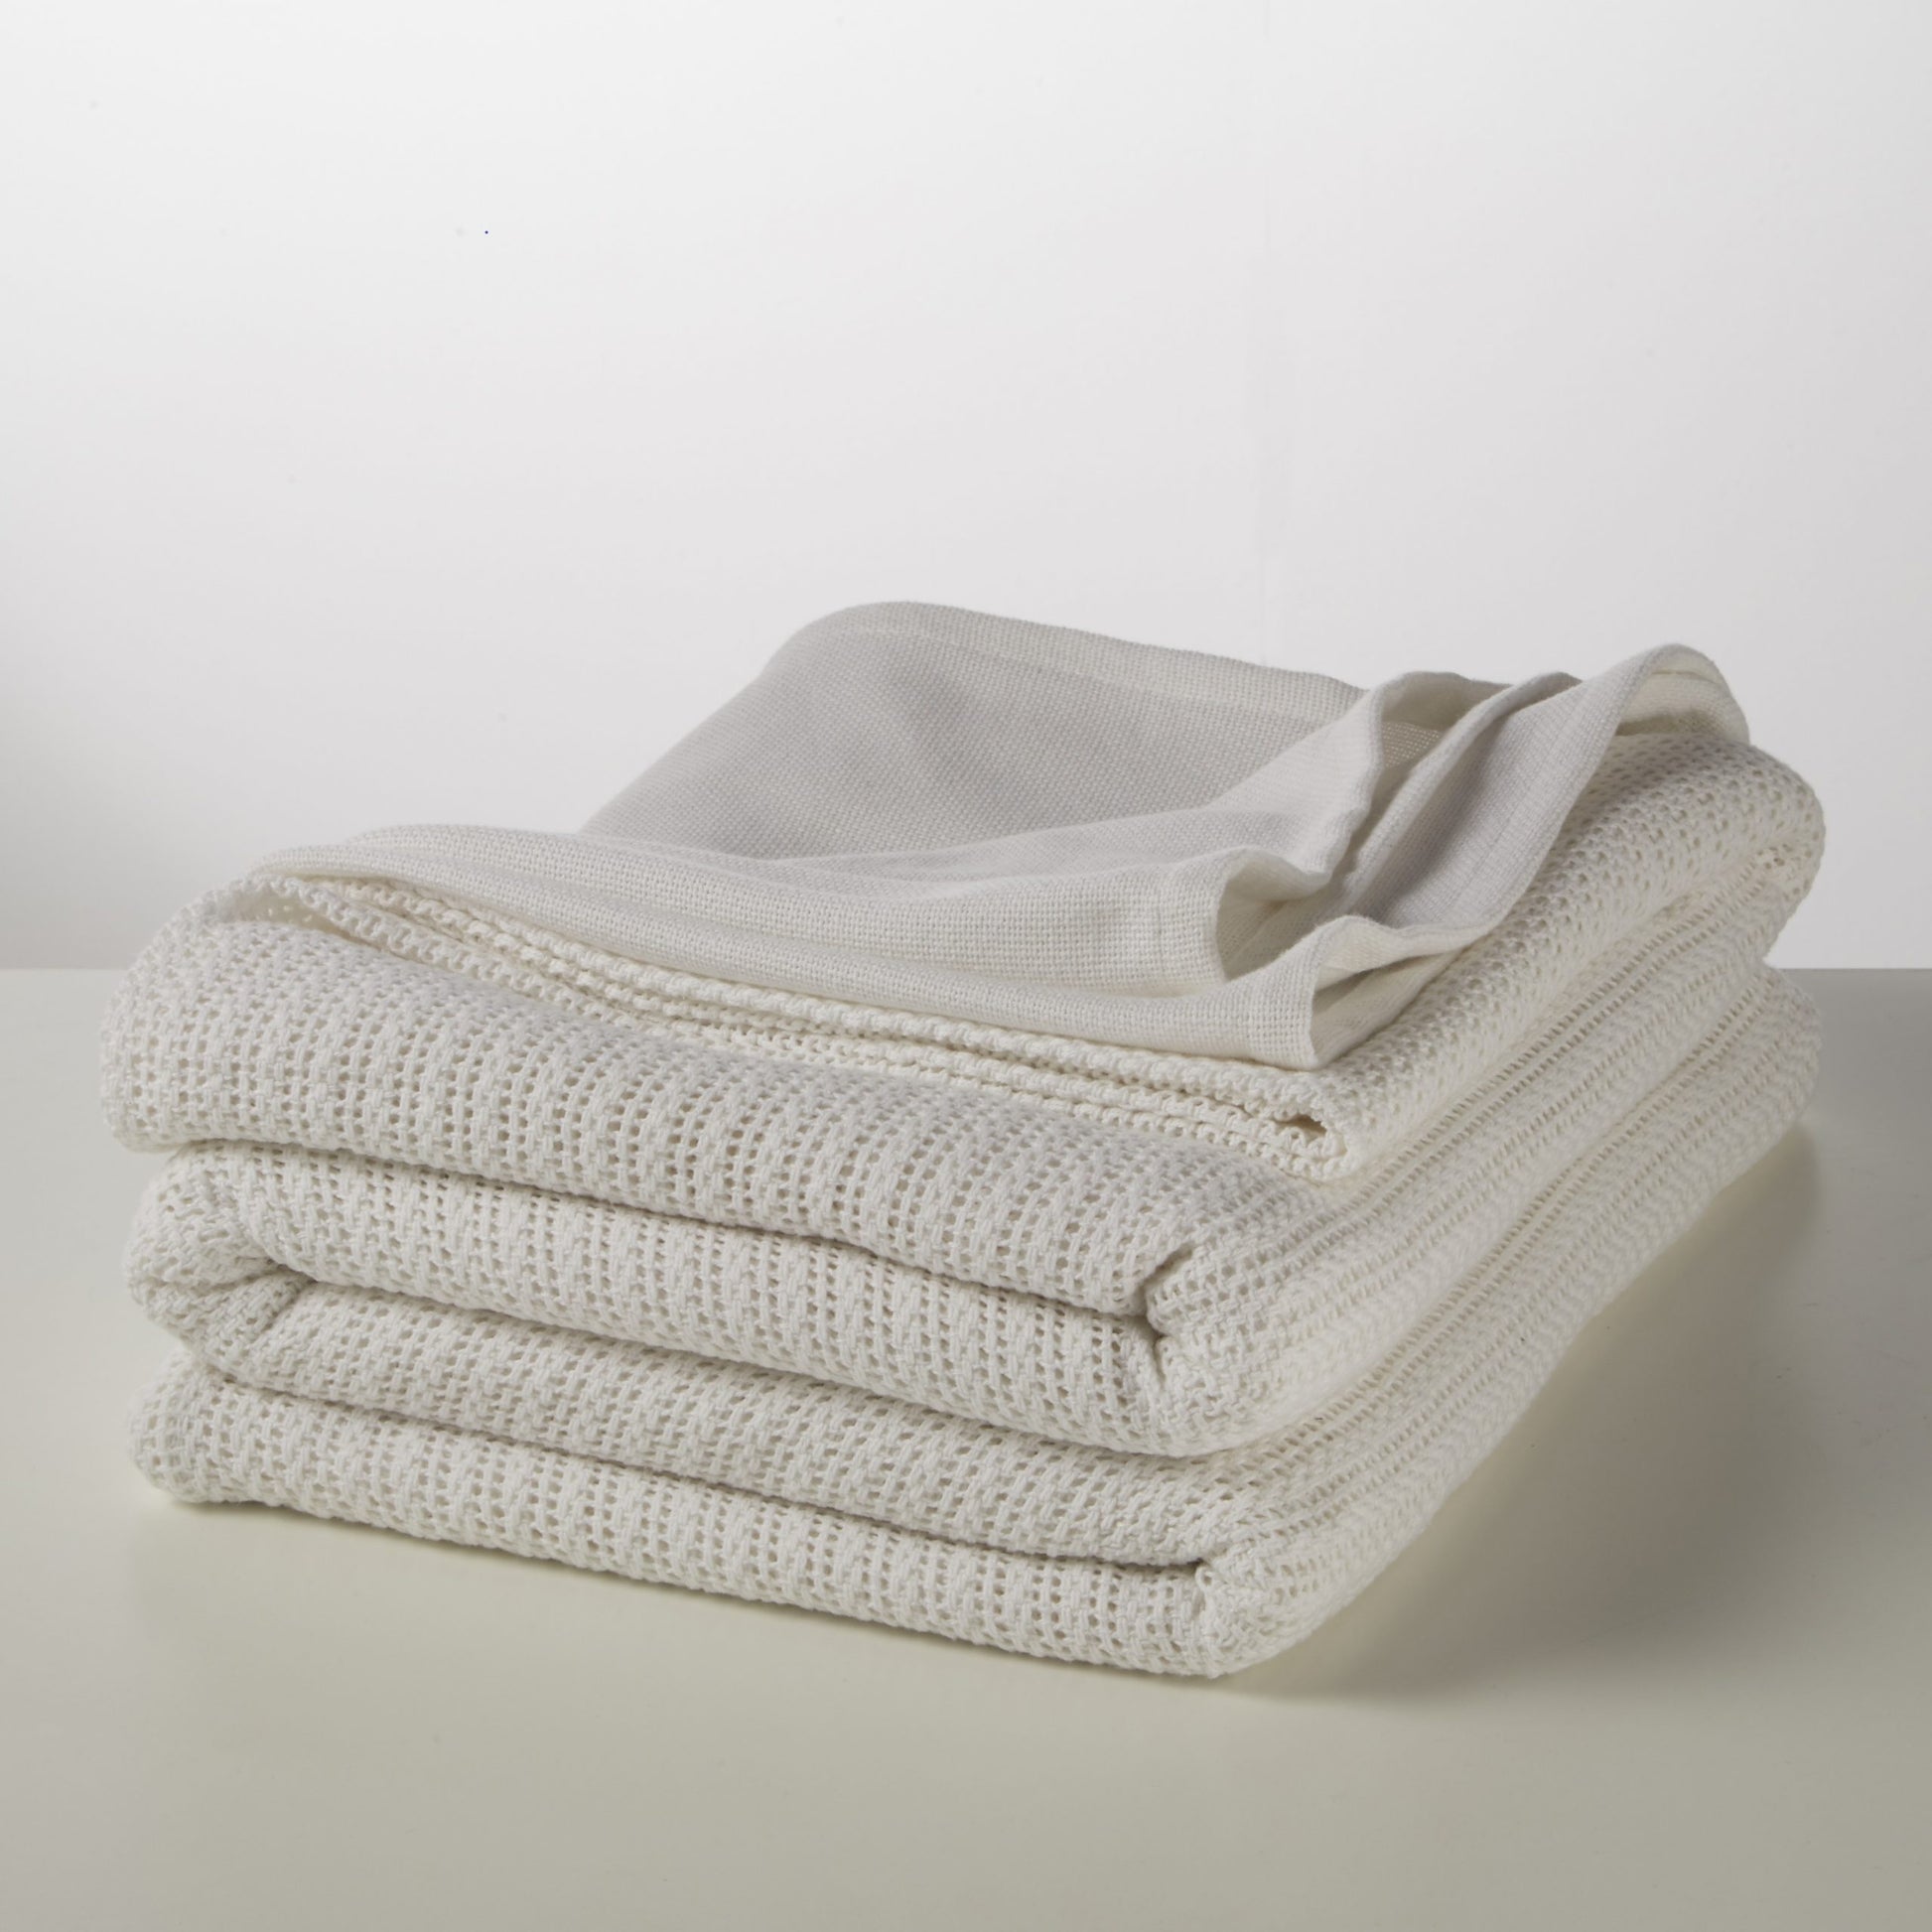 Sleepscene Cellular Blanket in White (Various sizes available)